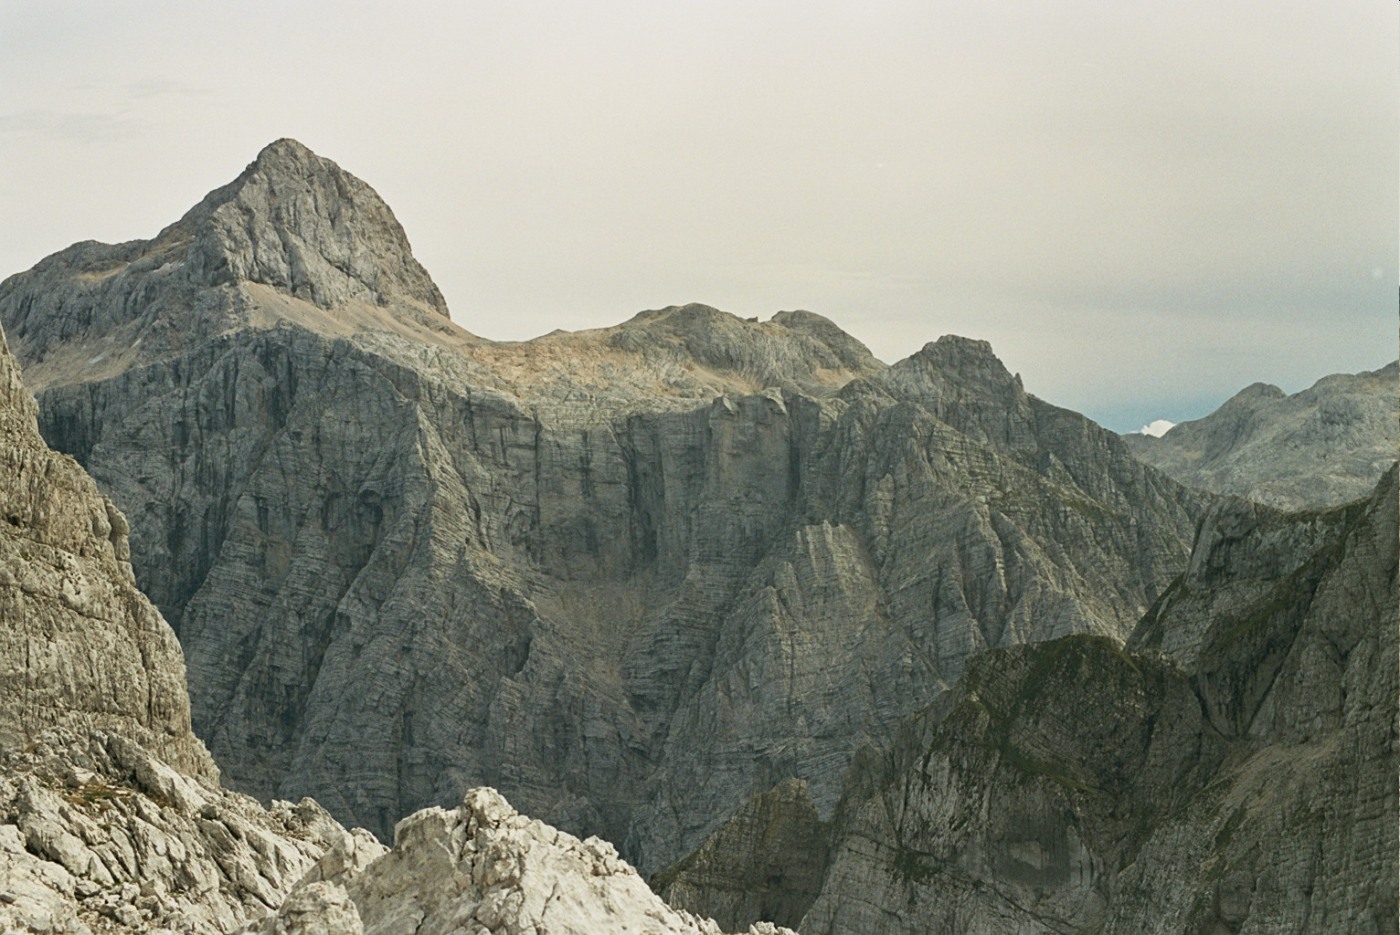 Potężny szczyt góry Triglav i jego wysoka na 1000 metrów północna ściana